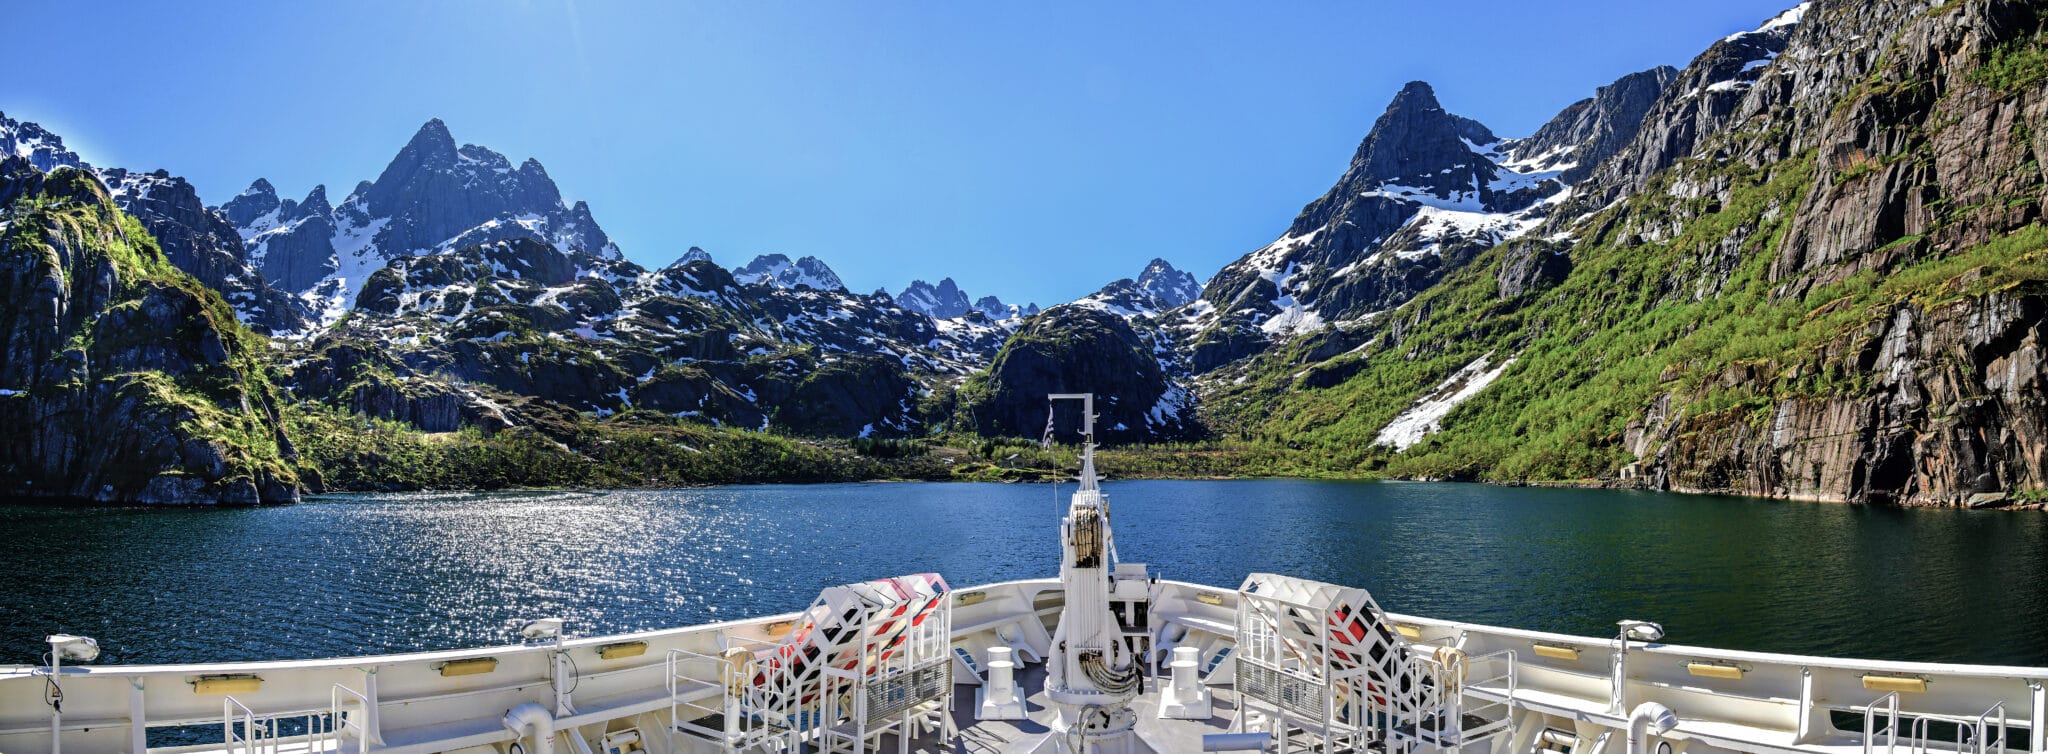 Norwegen lässt ab 2026 nur noch klimaneutrale Kreuzfahrtschiffe in seine Fjorde.